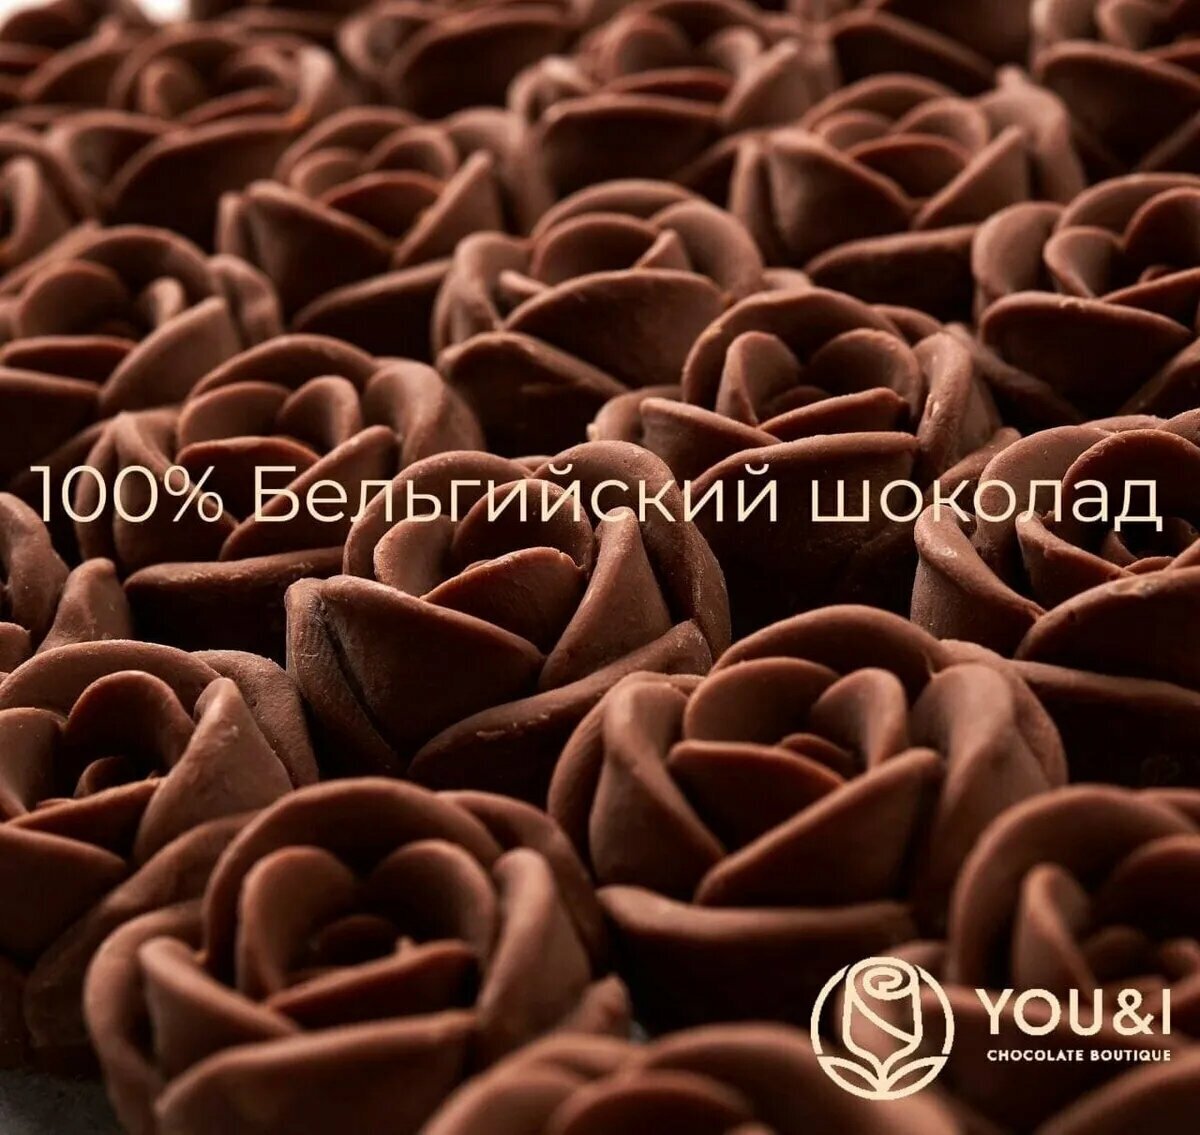 59 шоколадных роз в коробке You&I Бельгийский шоколад / подарок набор конфет